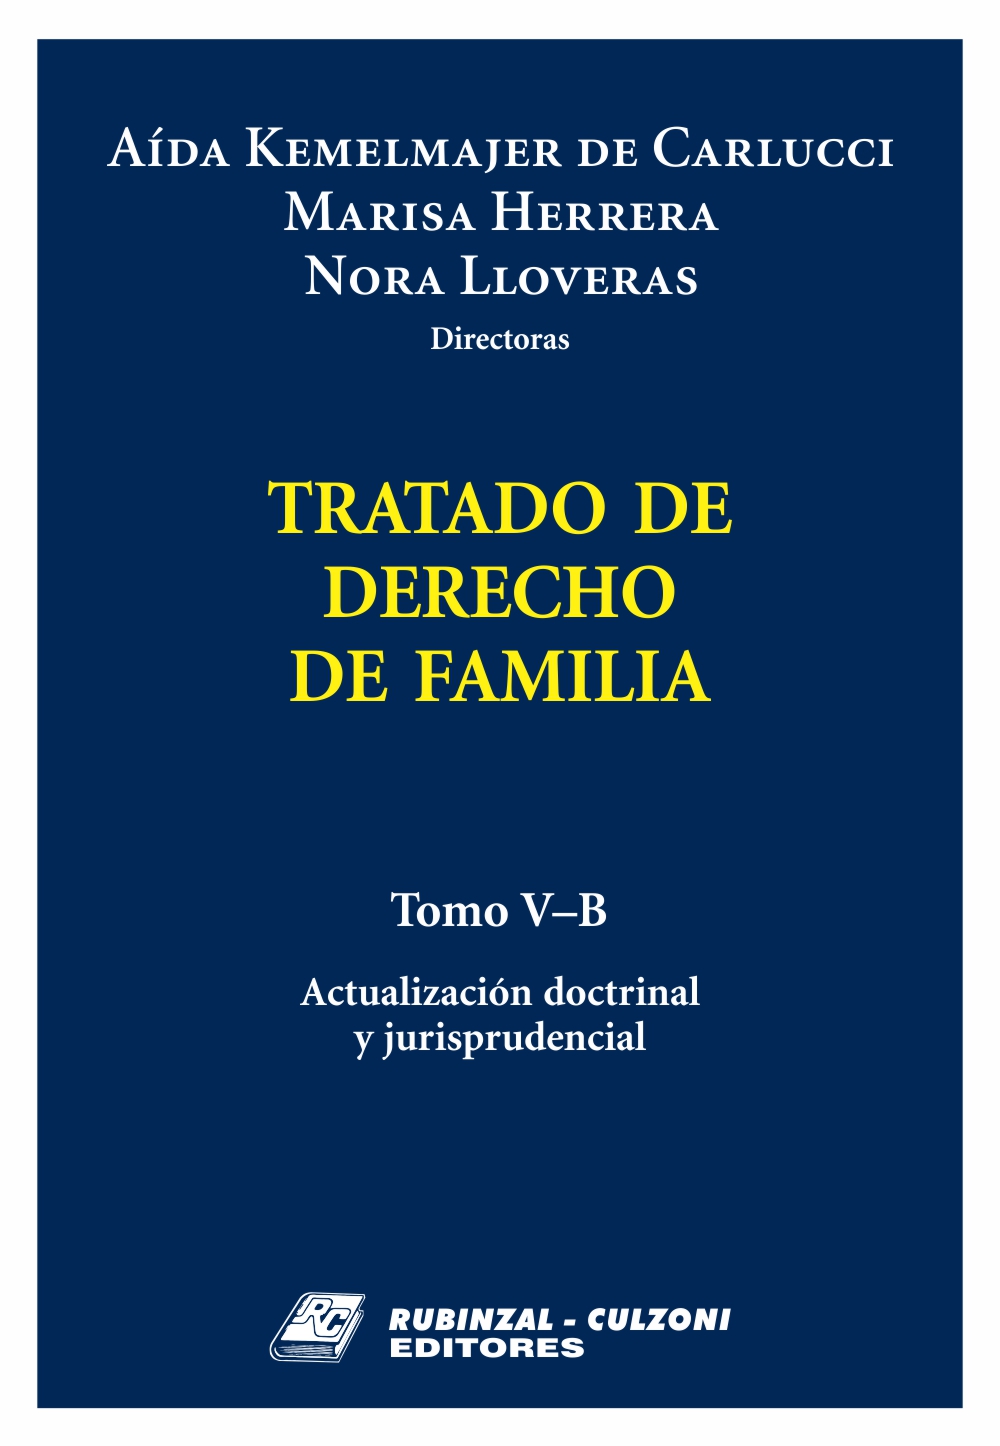 Tratado de Derecho de Familia - Tomo V-B. Actualización doctrinal y jurisprudencial